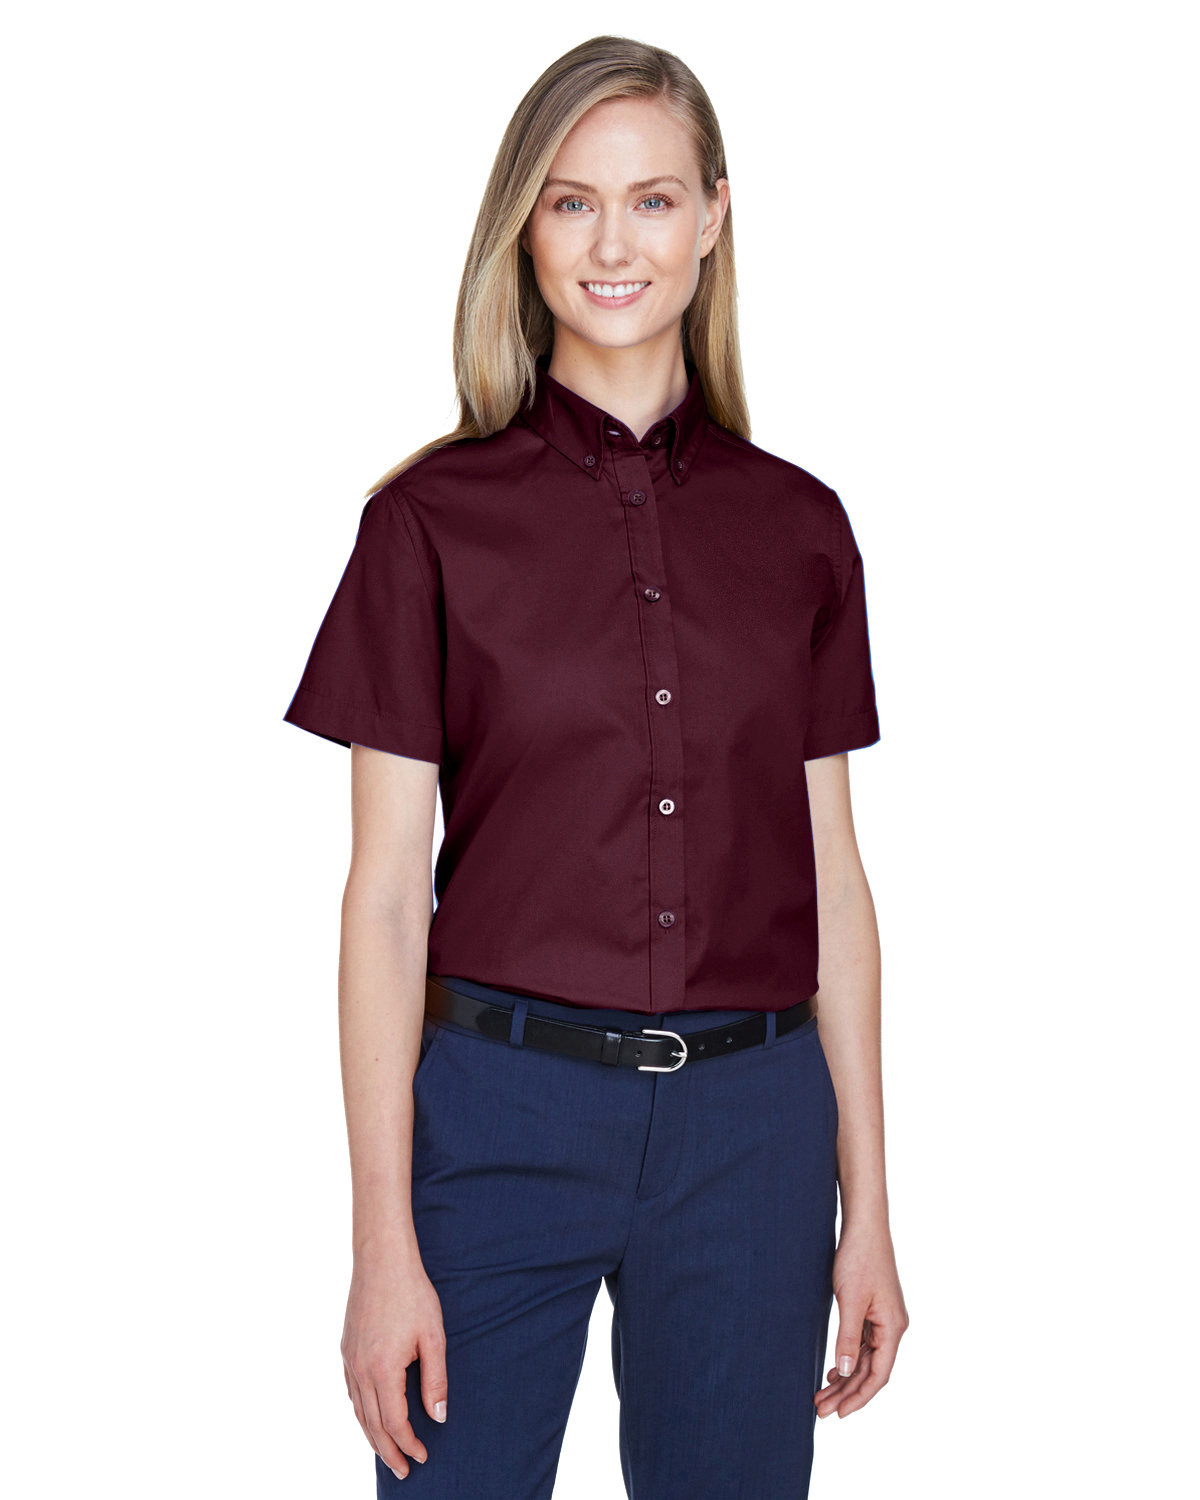 Core 365 78194 - Ladies' Optimum Short Sleeve Twill Shirt